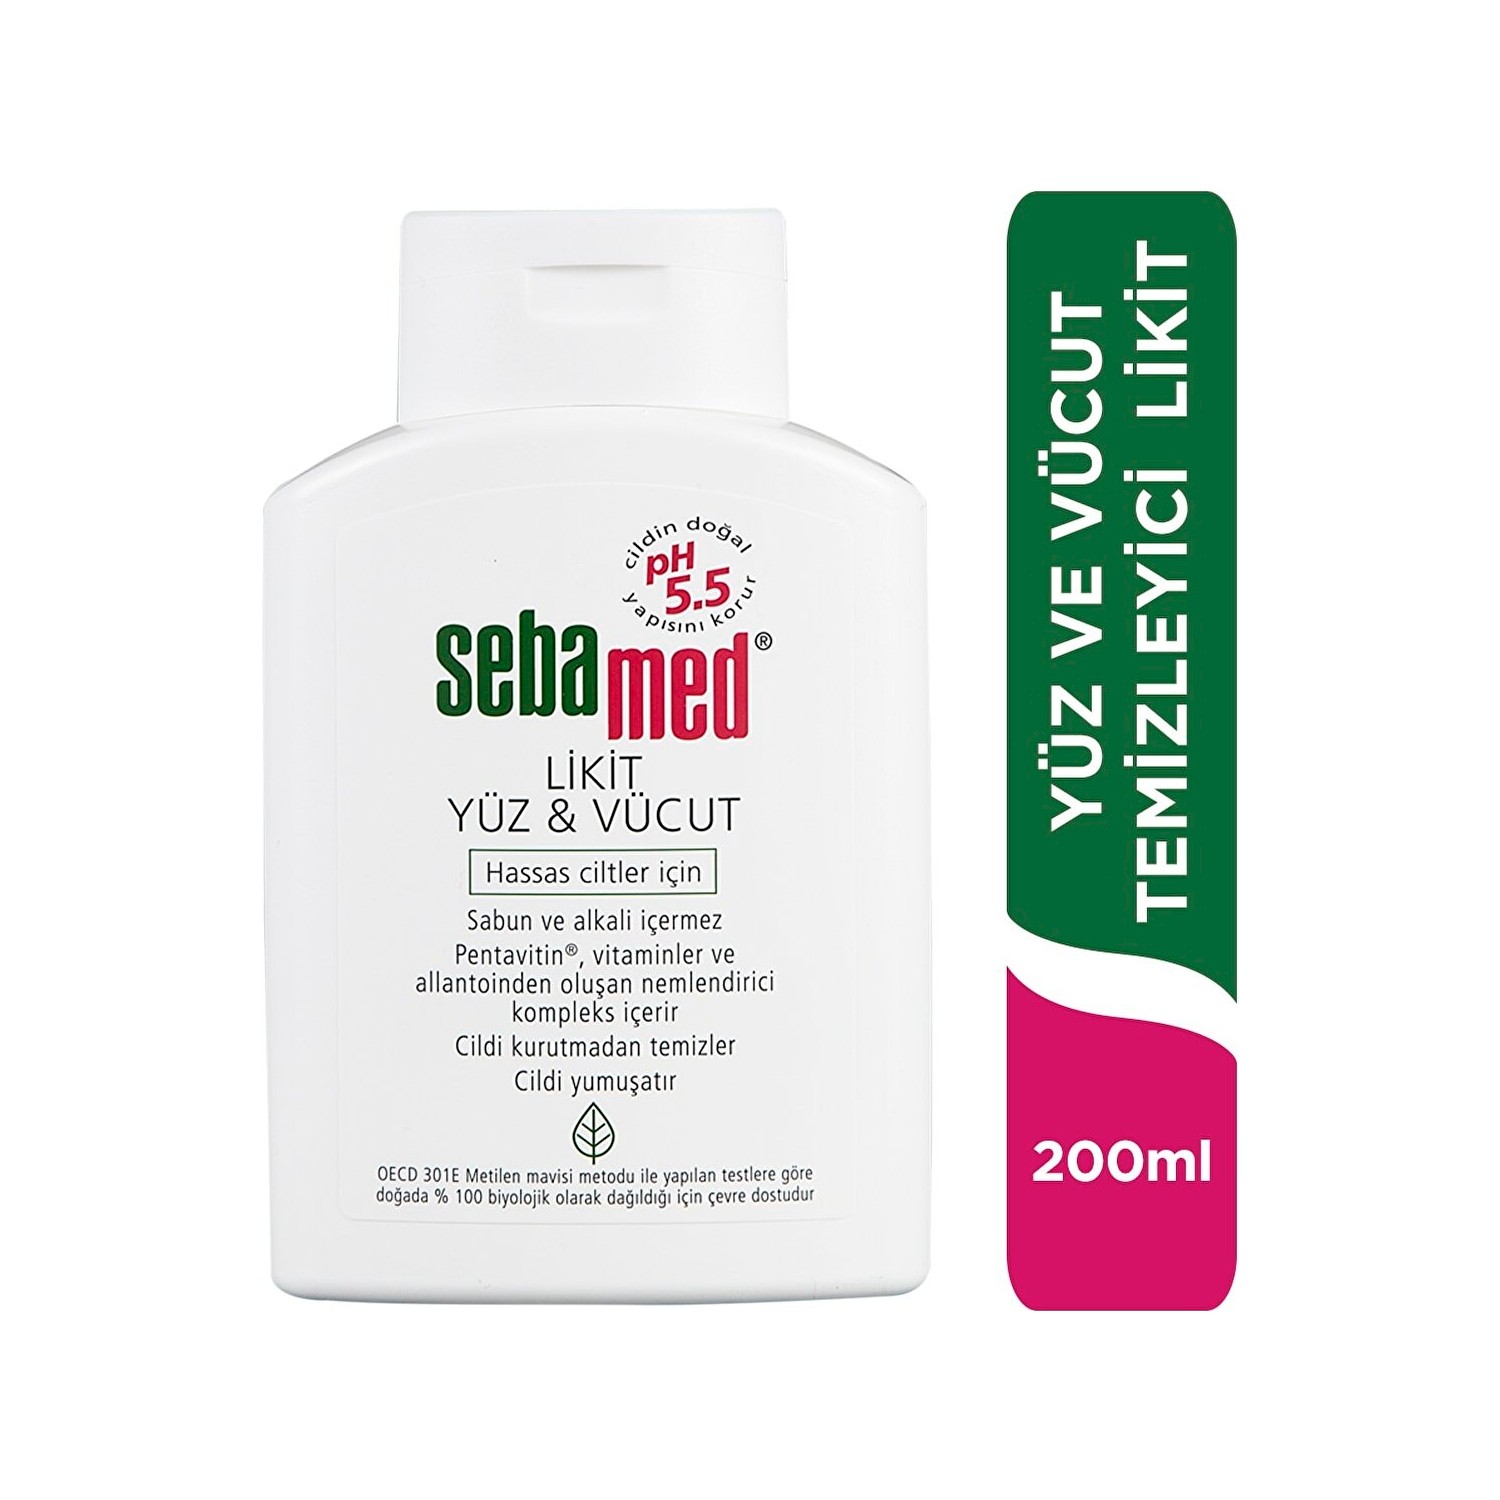 Очищающее средство Sebamed Liquid для лица и тела, 200 мл